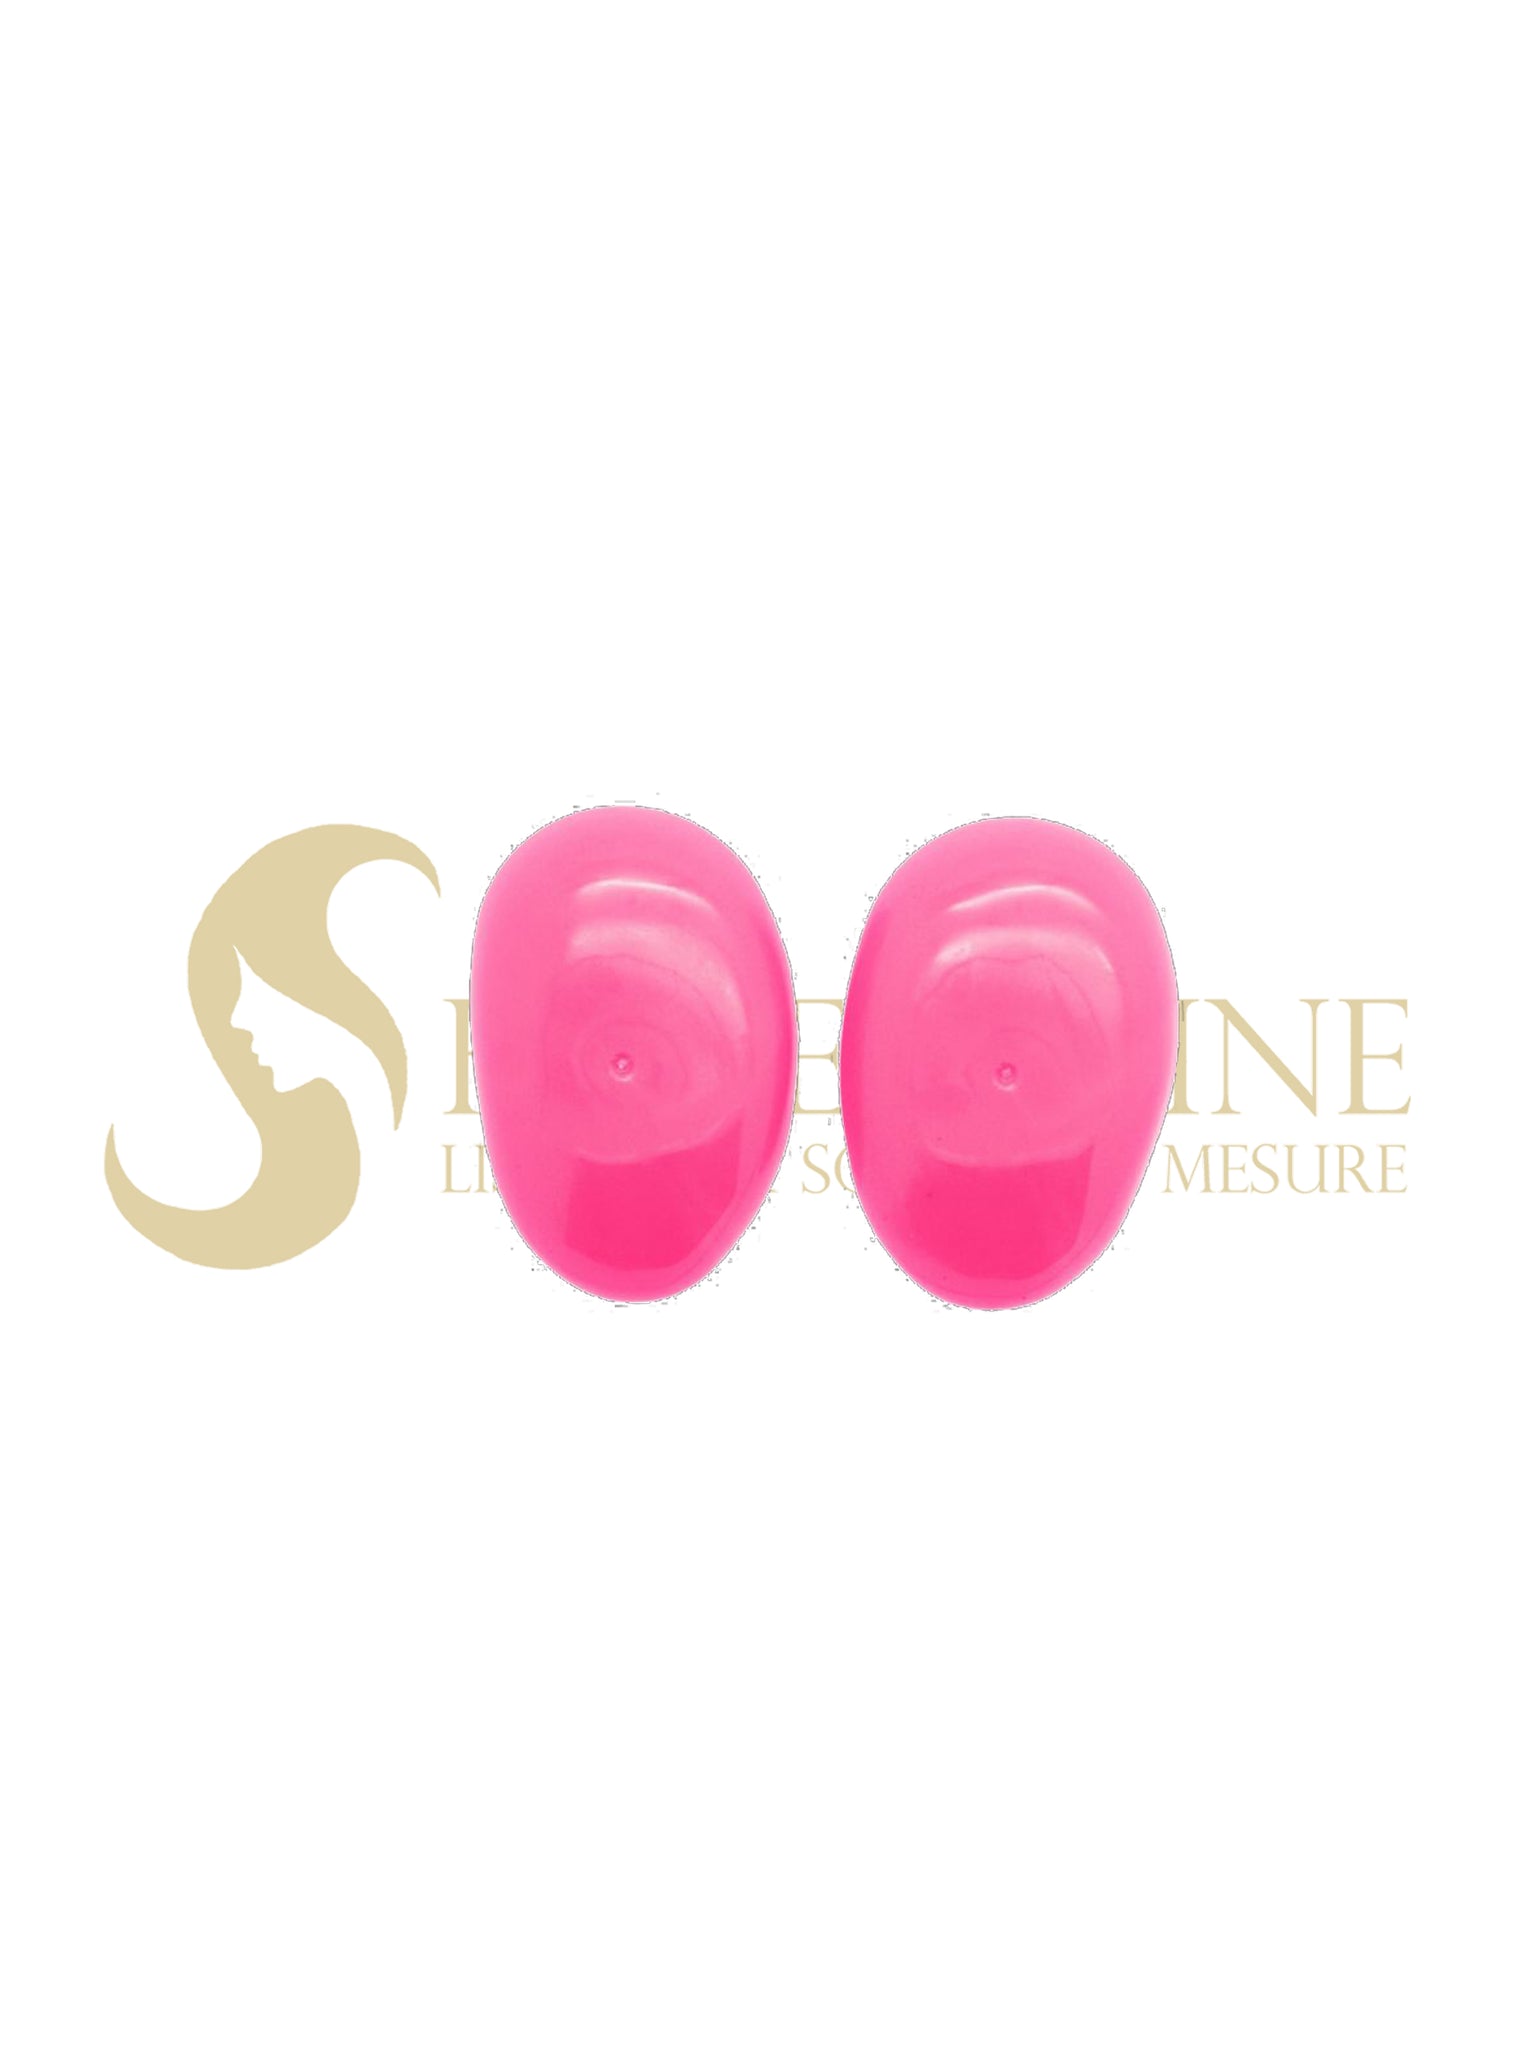 Protège oreilles rose - Euro stil - Shi Keratine